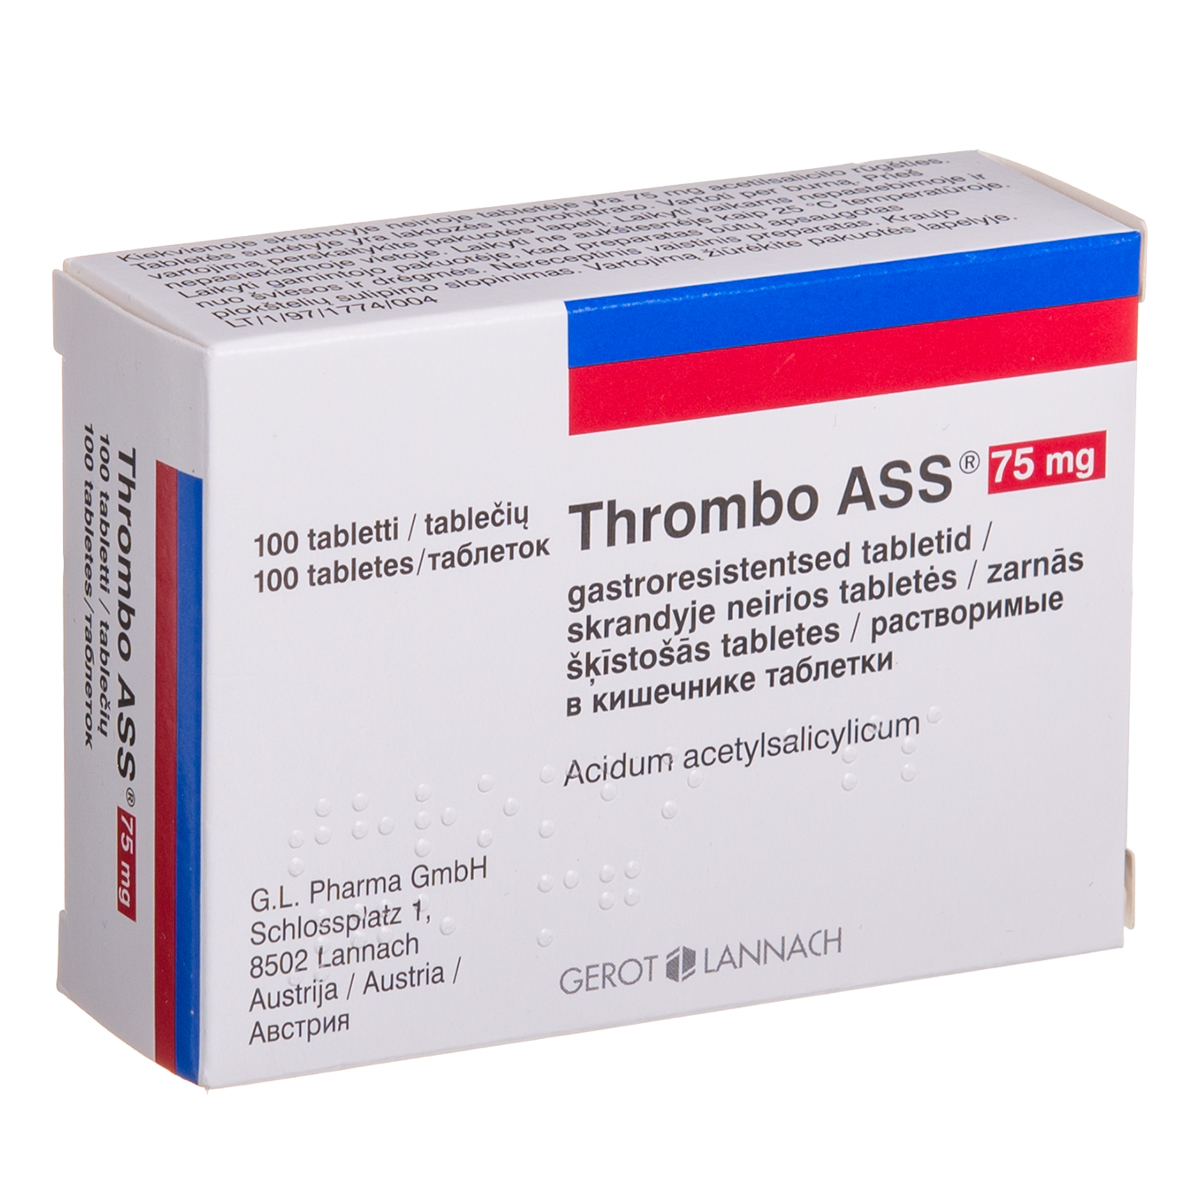 THROMBO ASS, 75 mg, skrandyje neirios tabletės, N100